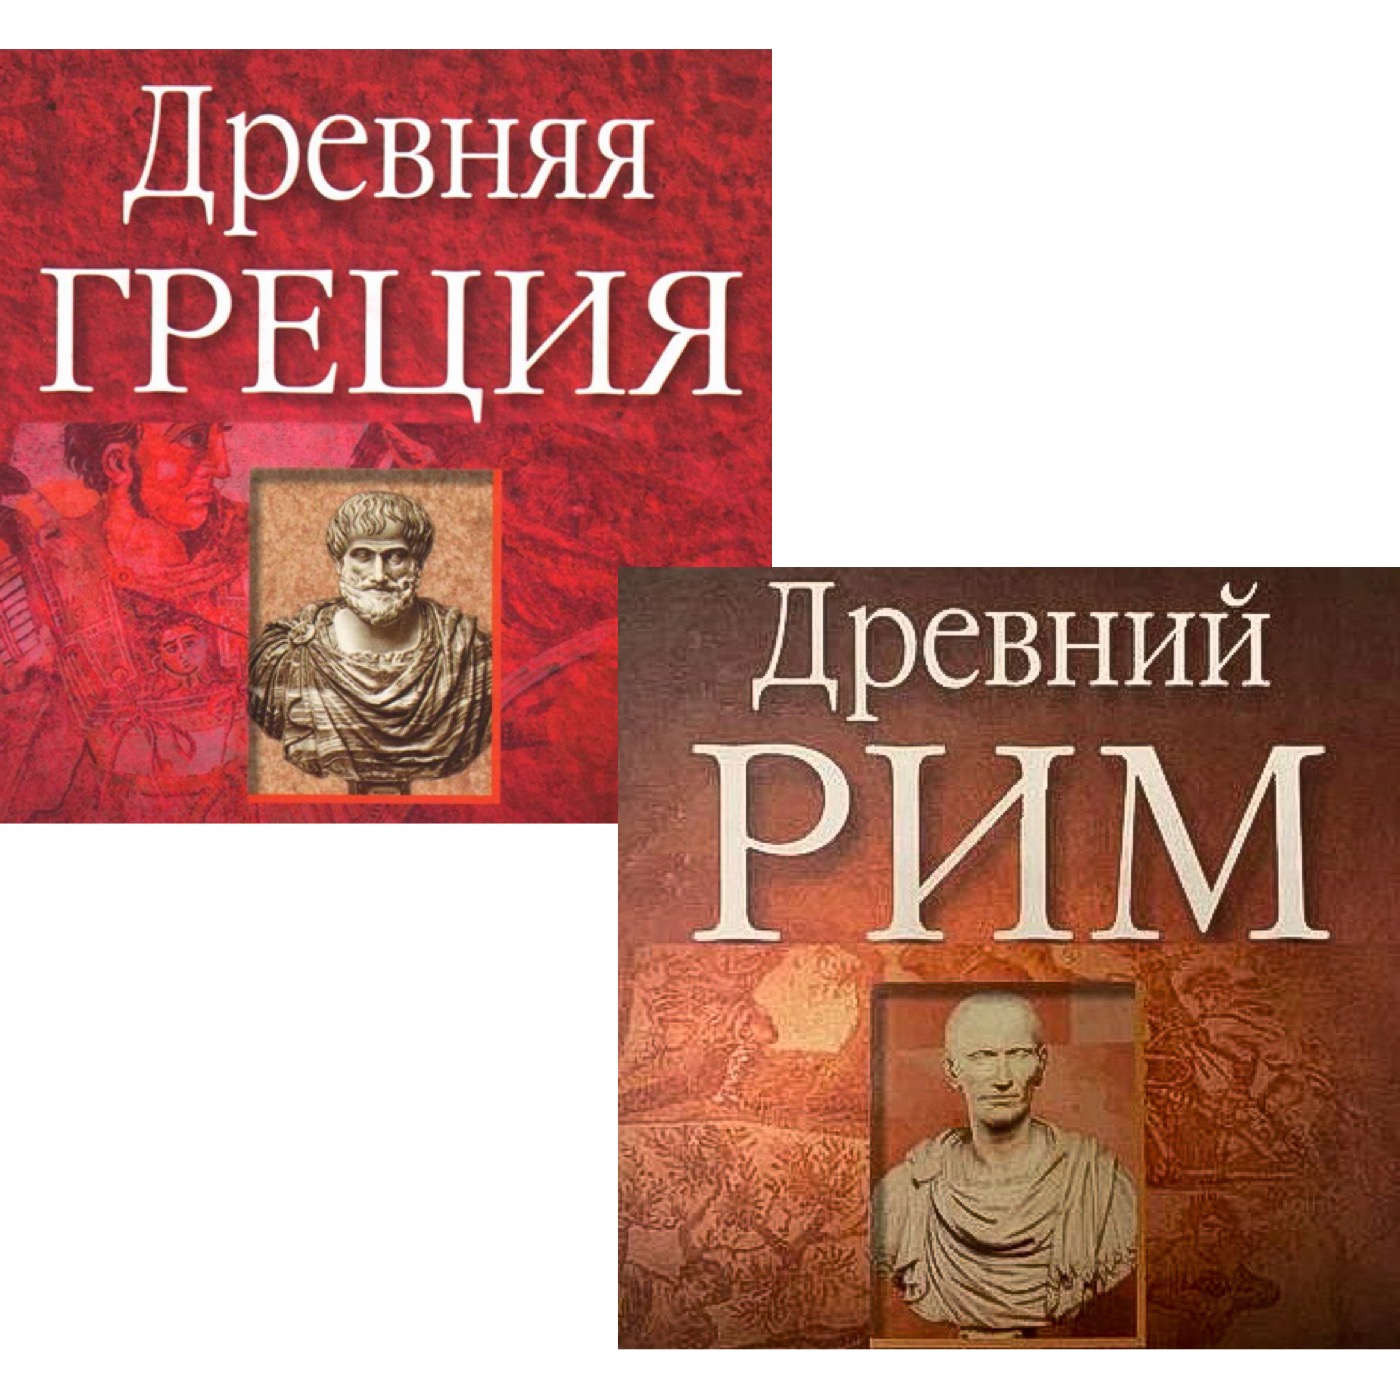 Расписание предэкзаменационных консультаций по "Истории древней Греции" и "Истории древнего Рима"